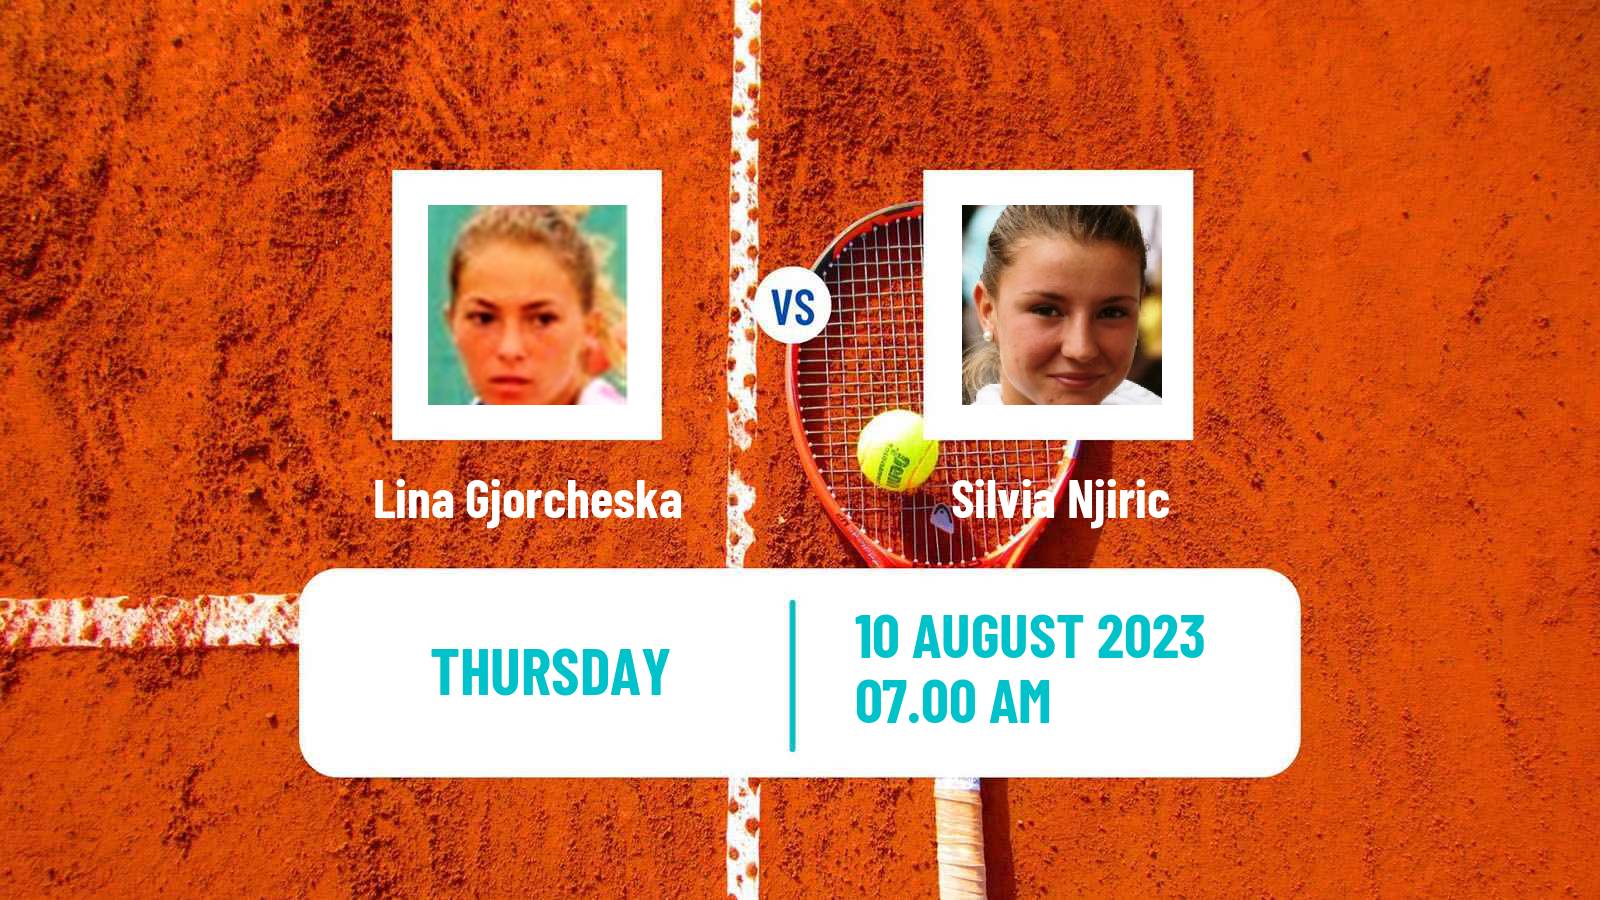 Tennis ITF W25 Osijek 2 Women Lina Gjorcheska - Silvia Njiric